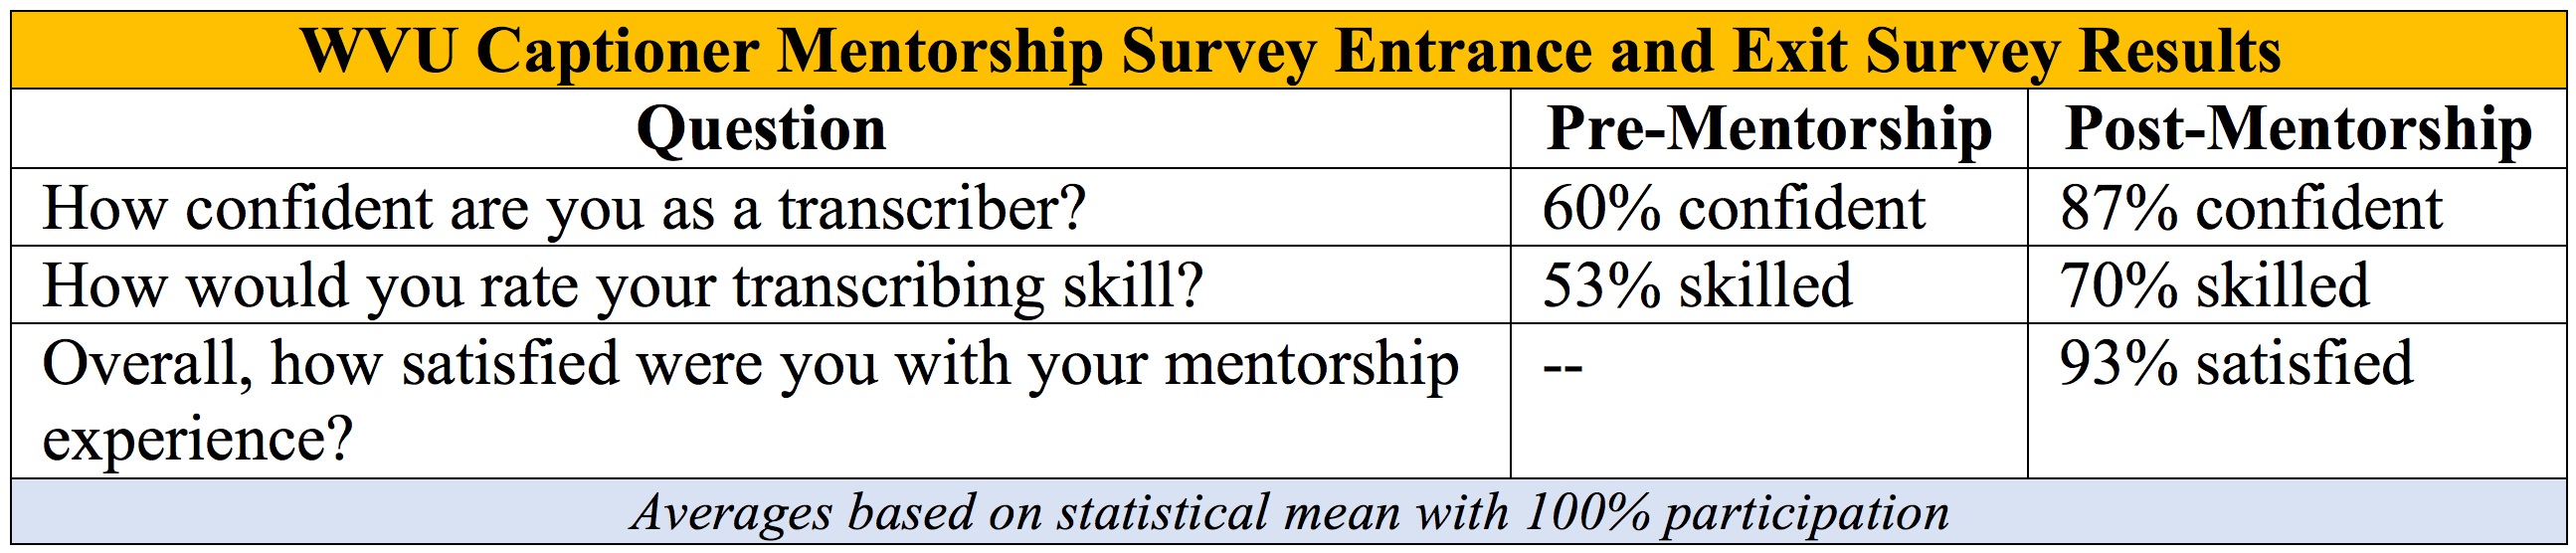 Table: WVU Captioner Mentorship Survey Entrance and Exit Survey Results